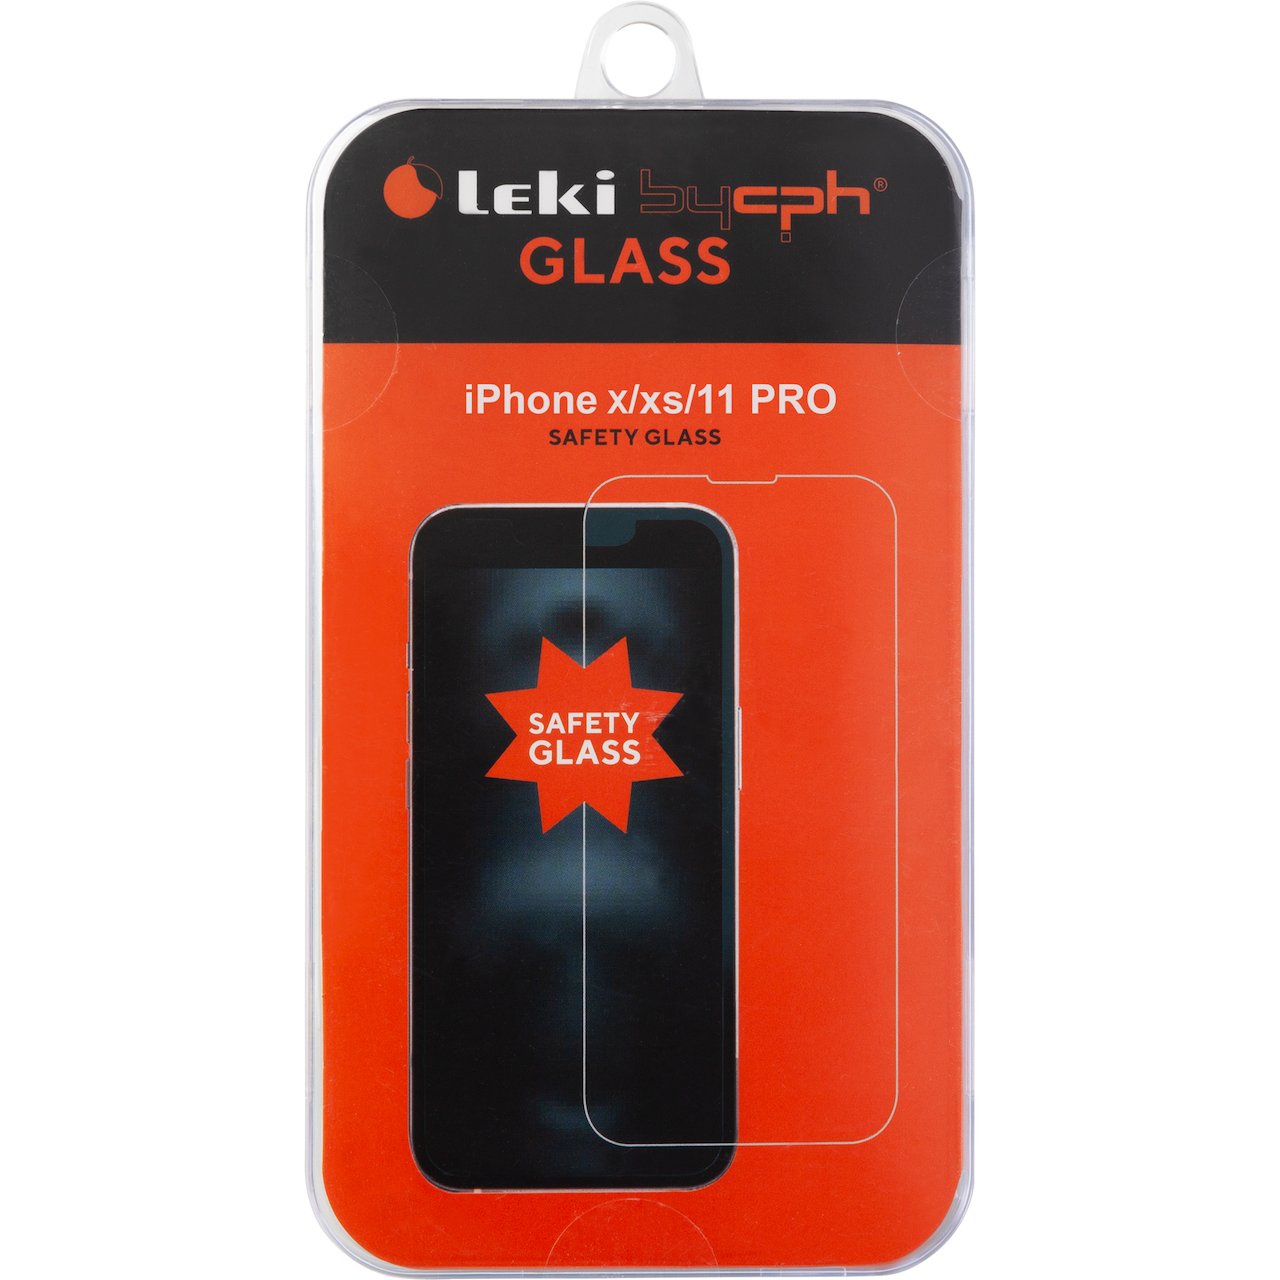 LEKI BYCPH GLASS TIL IPHONE X/XS/11 PRO